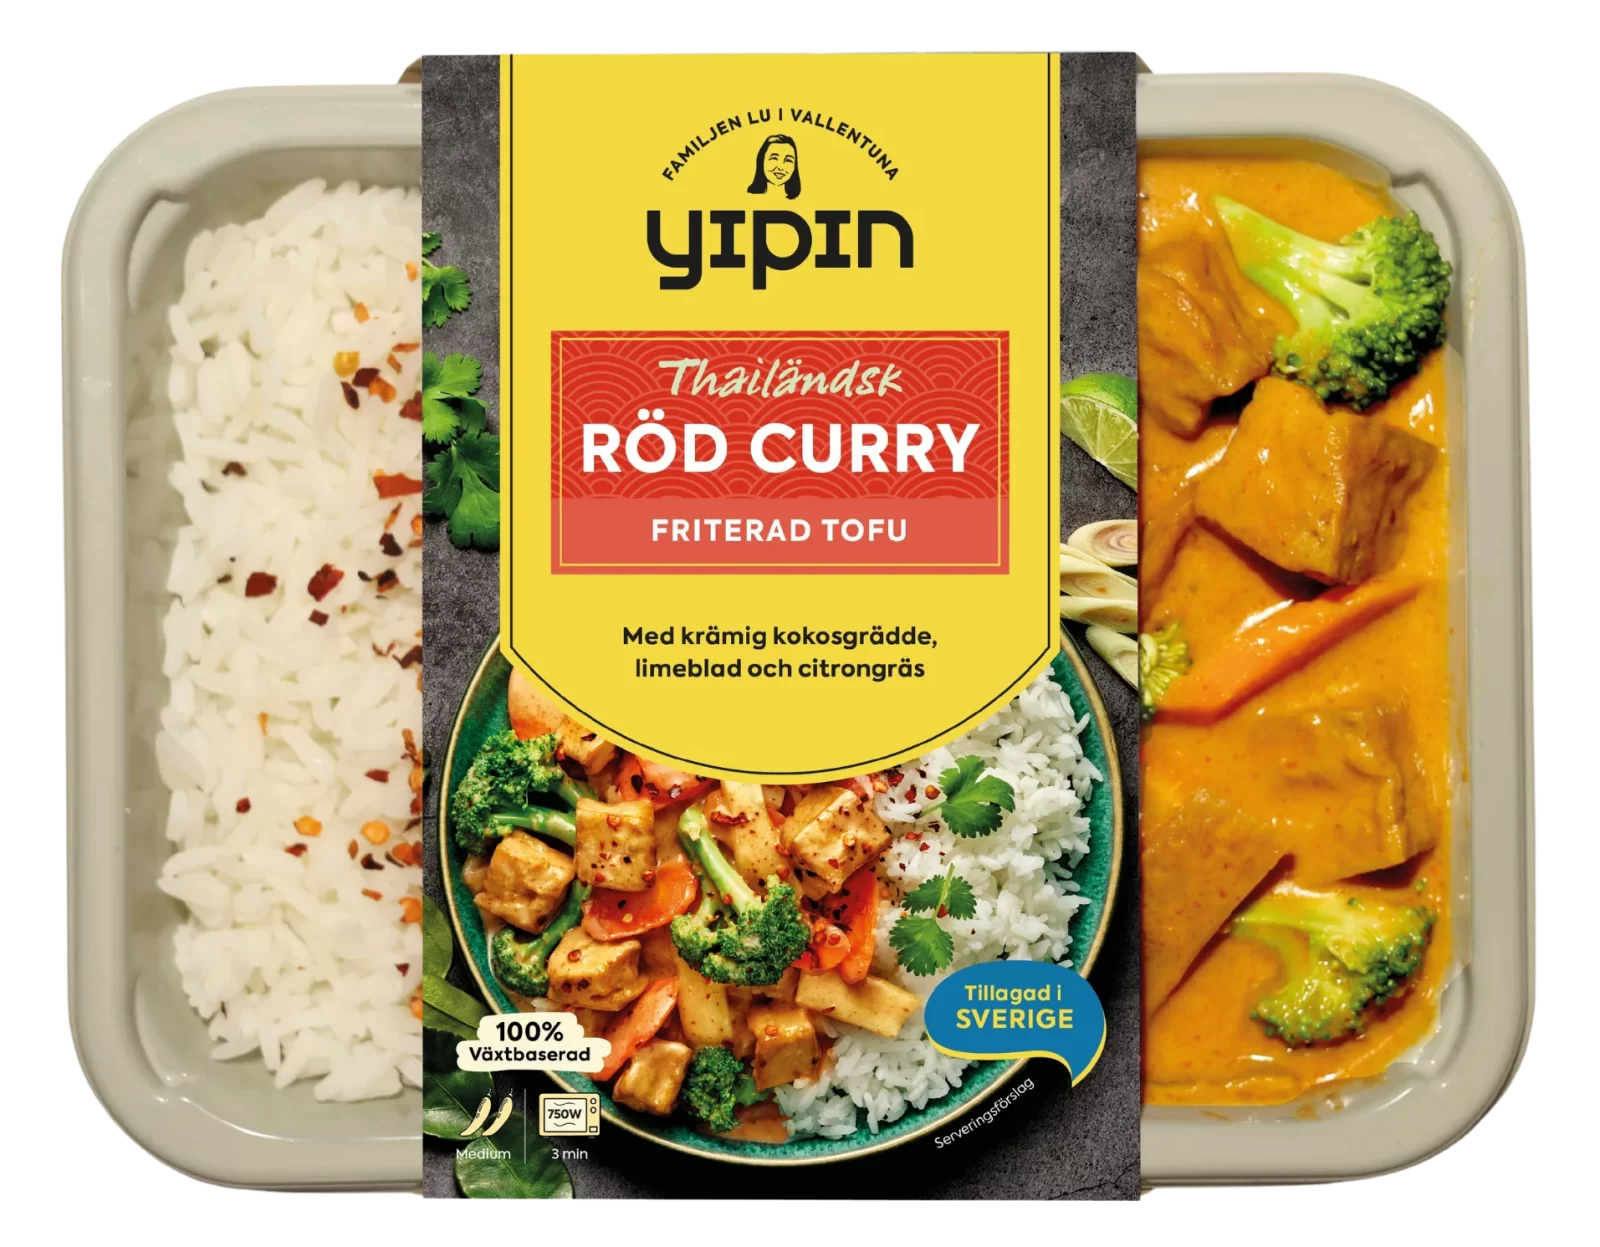 Bilden visar en asiatisk färdigrätt Röd curry med friterad tofu från Yipin